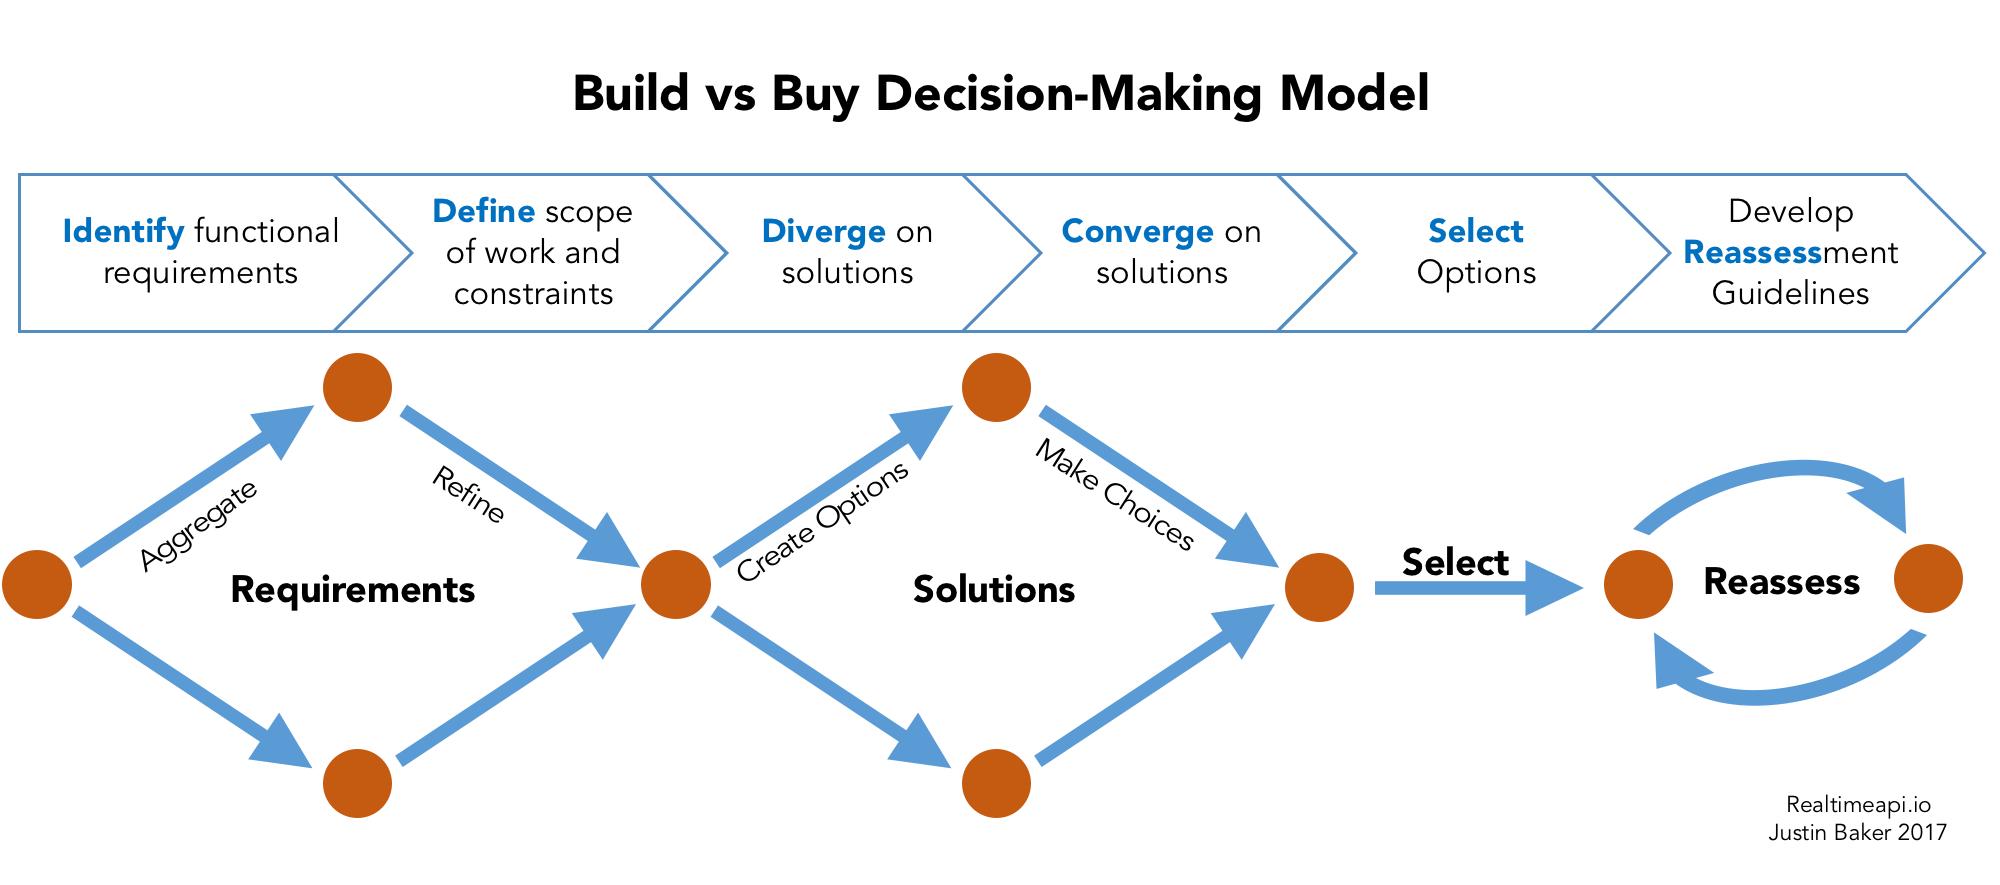 Build vs buy decision-making model for developers